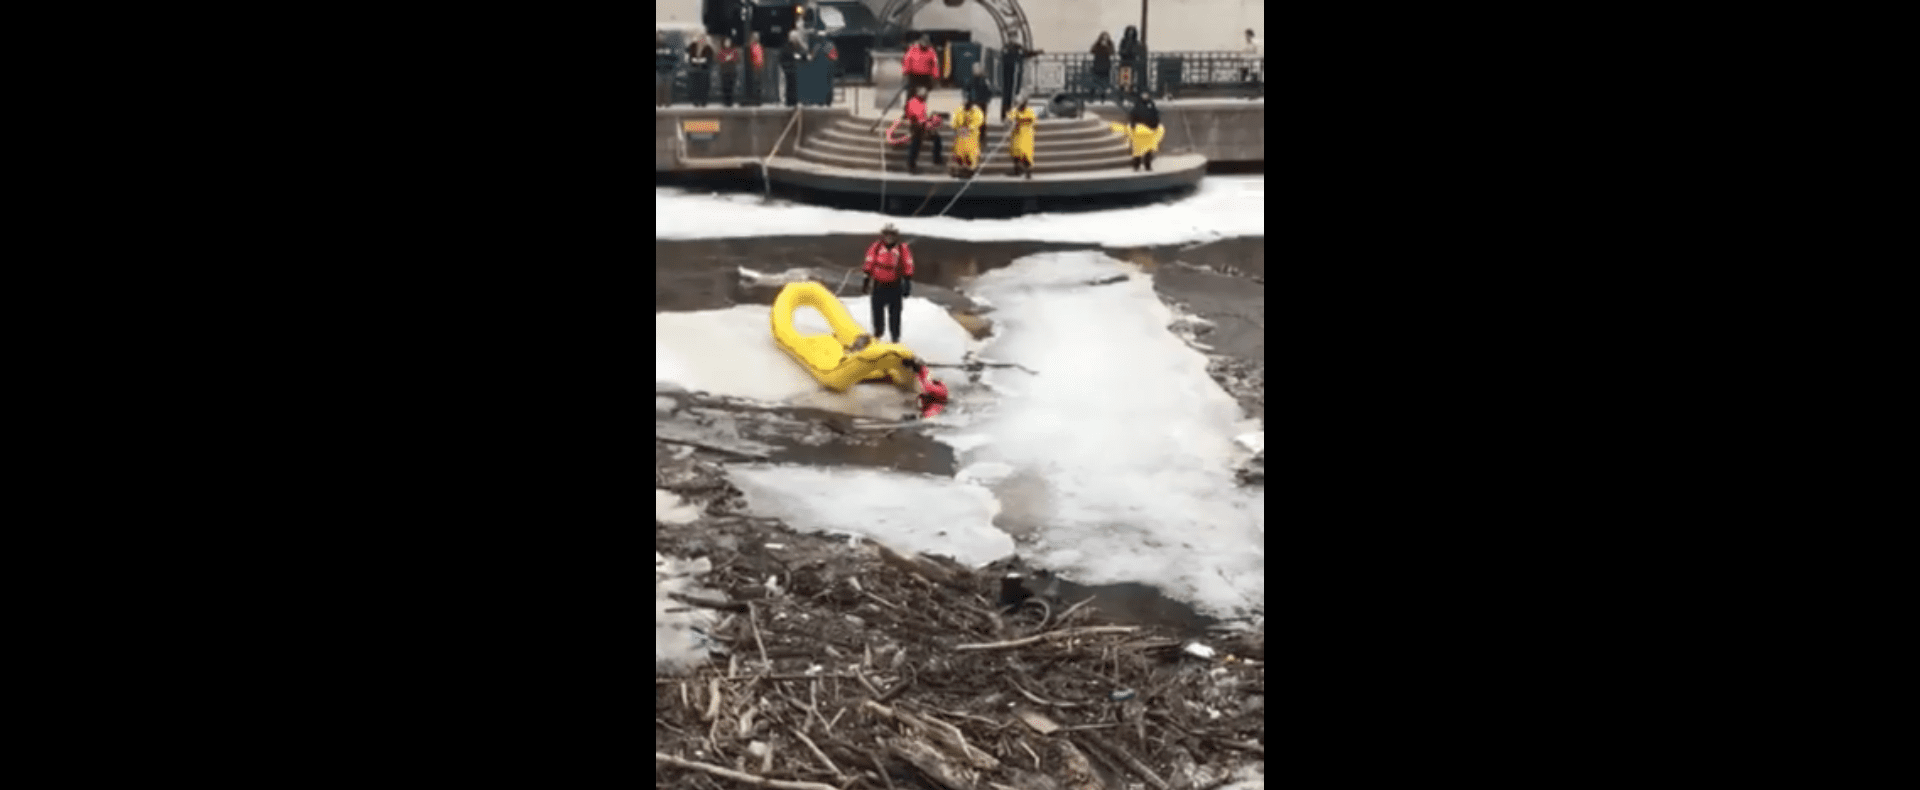 Los rescatistas arriesgan su vida sobre el hielo. Fuente: Facebook/beckie.curtiusjosephitis